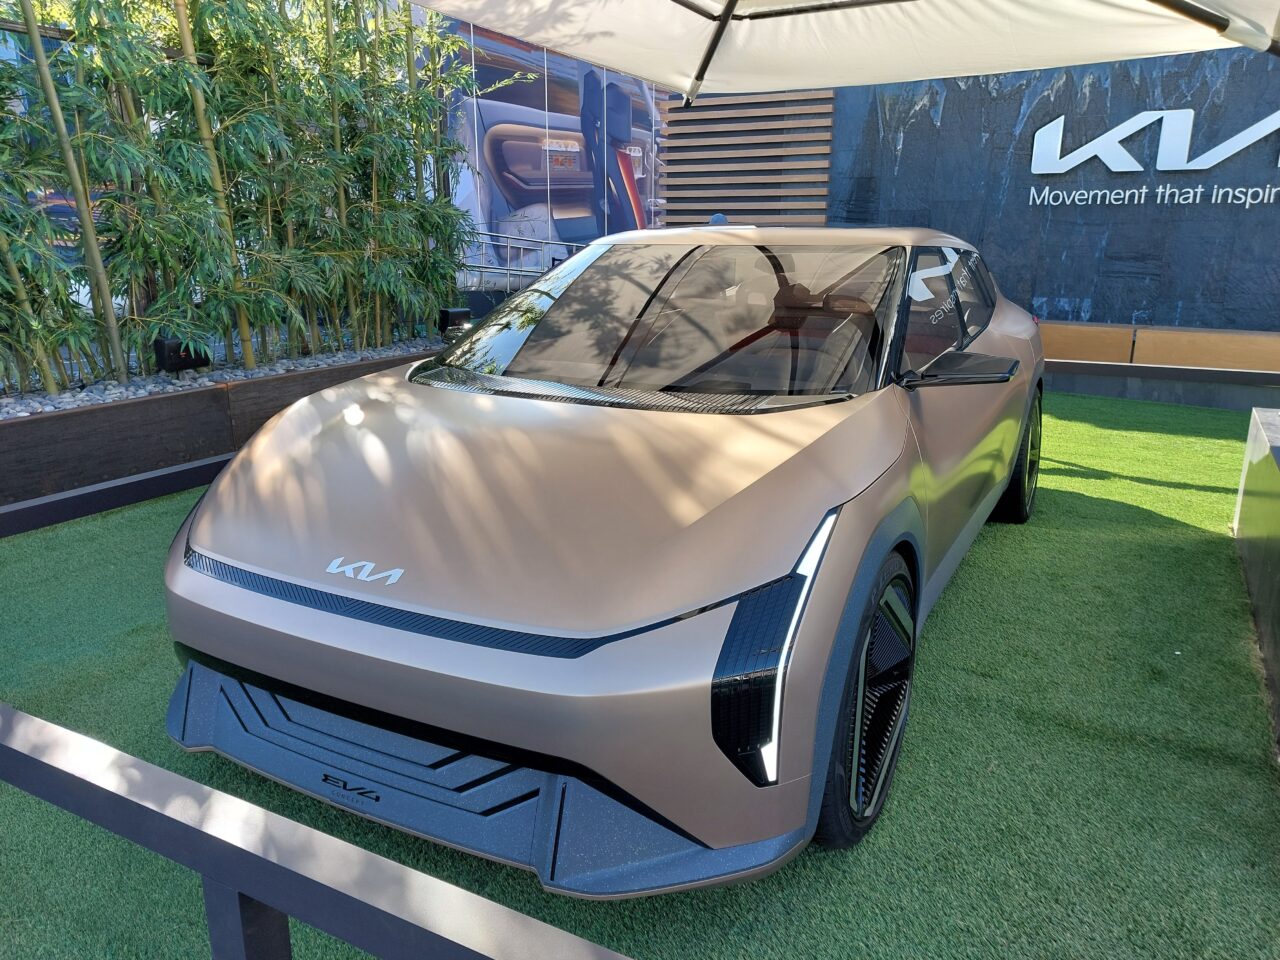 Projekty samochodów CES 2024. Koncept elektrycznego samochodu marki KIA wystawiony na zewnątrz na sztucznej trawie, z bambusami w tle i napisem "Movement that inspires".